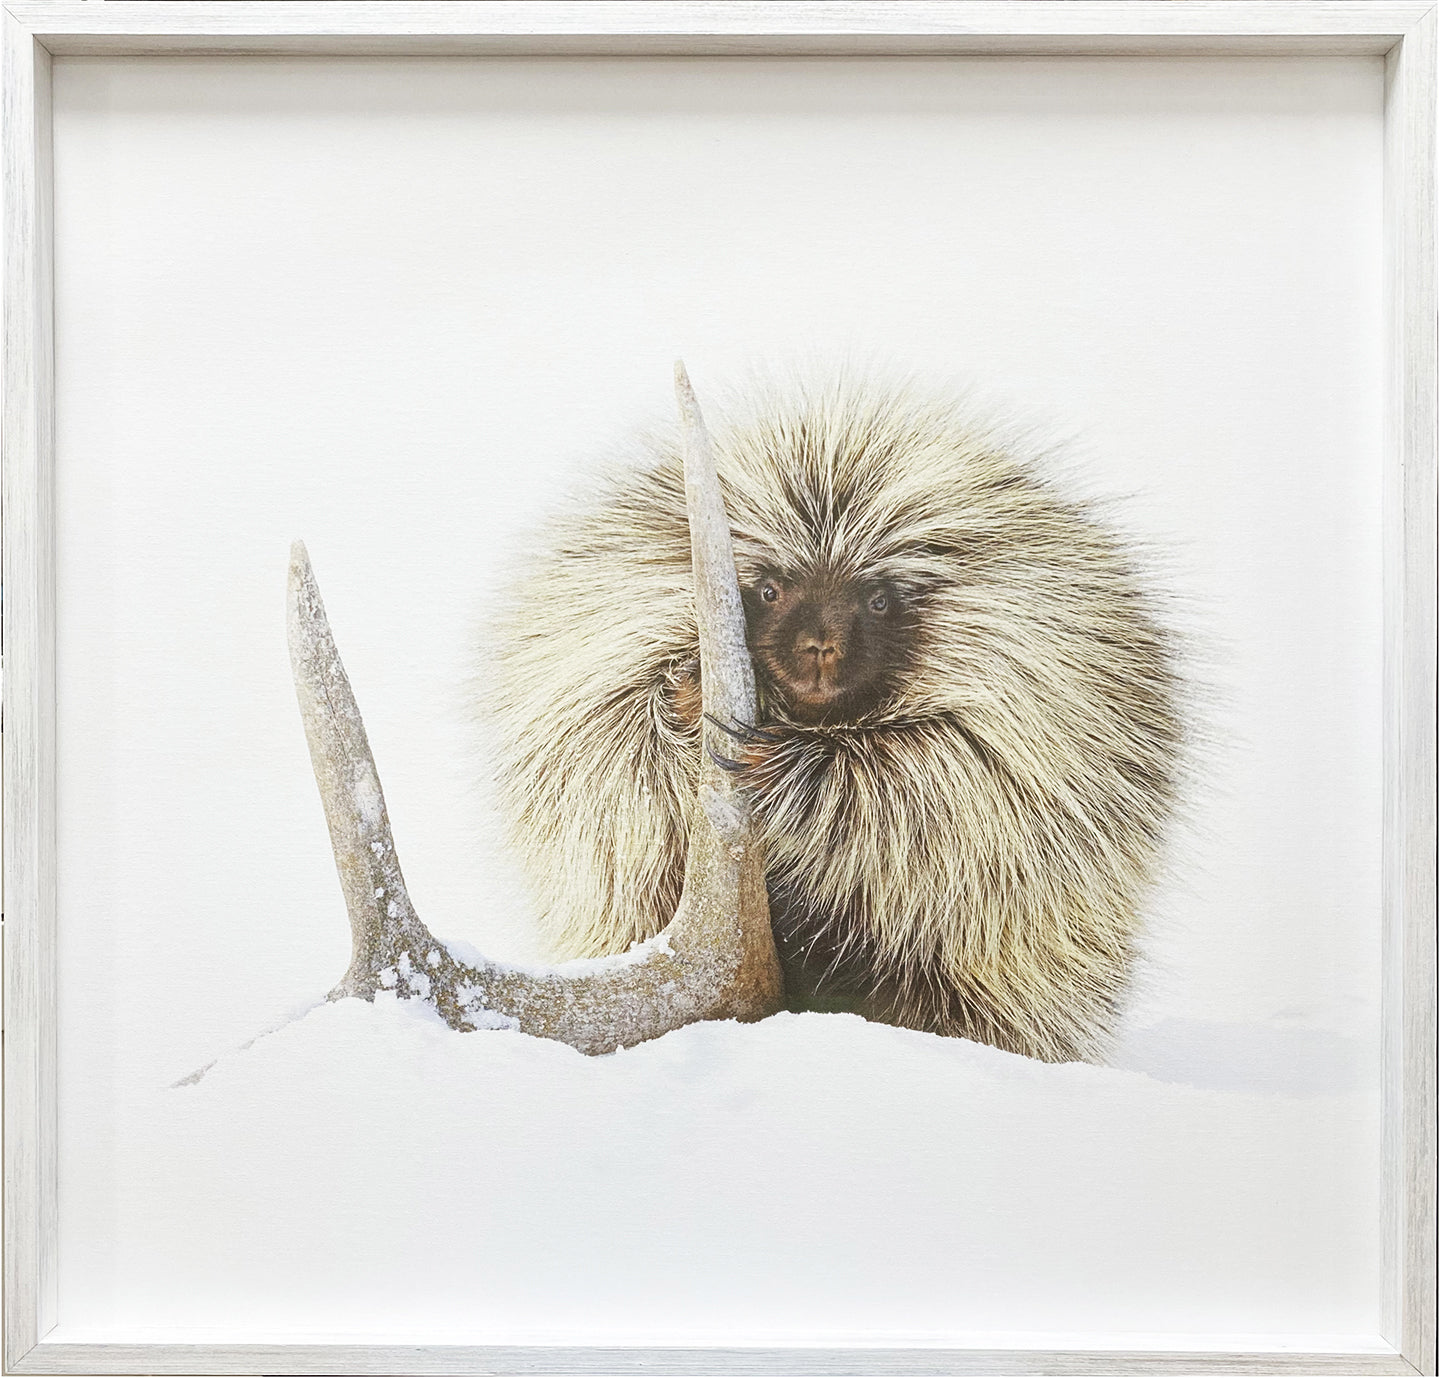 Porcupine – photograph